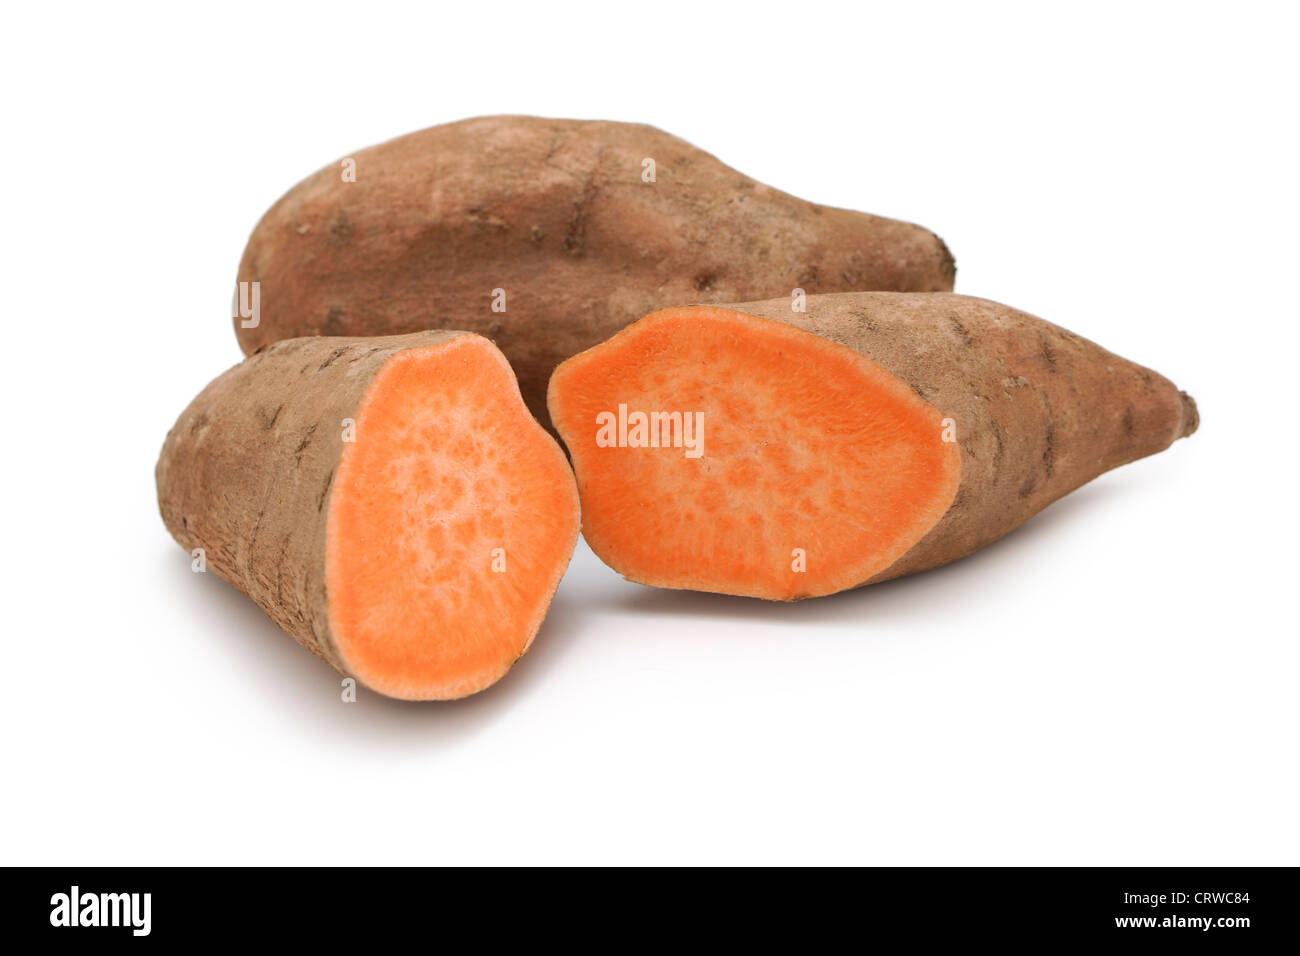 La patata dolce, patate dolci, igname, patate, arancione con la polpa esposta Foto Stock